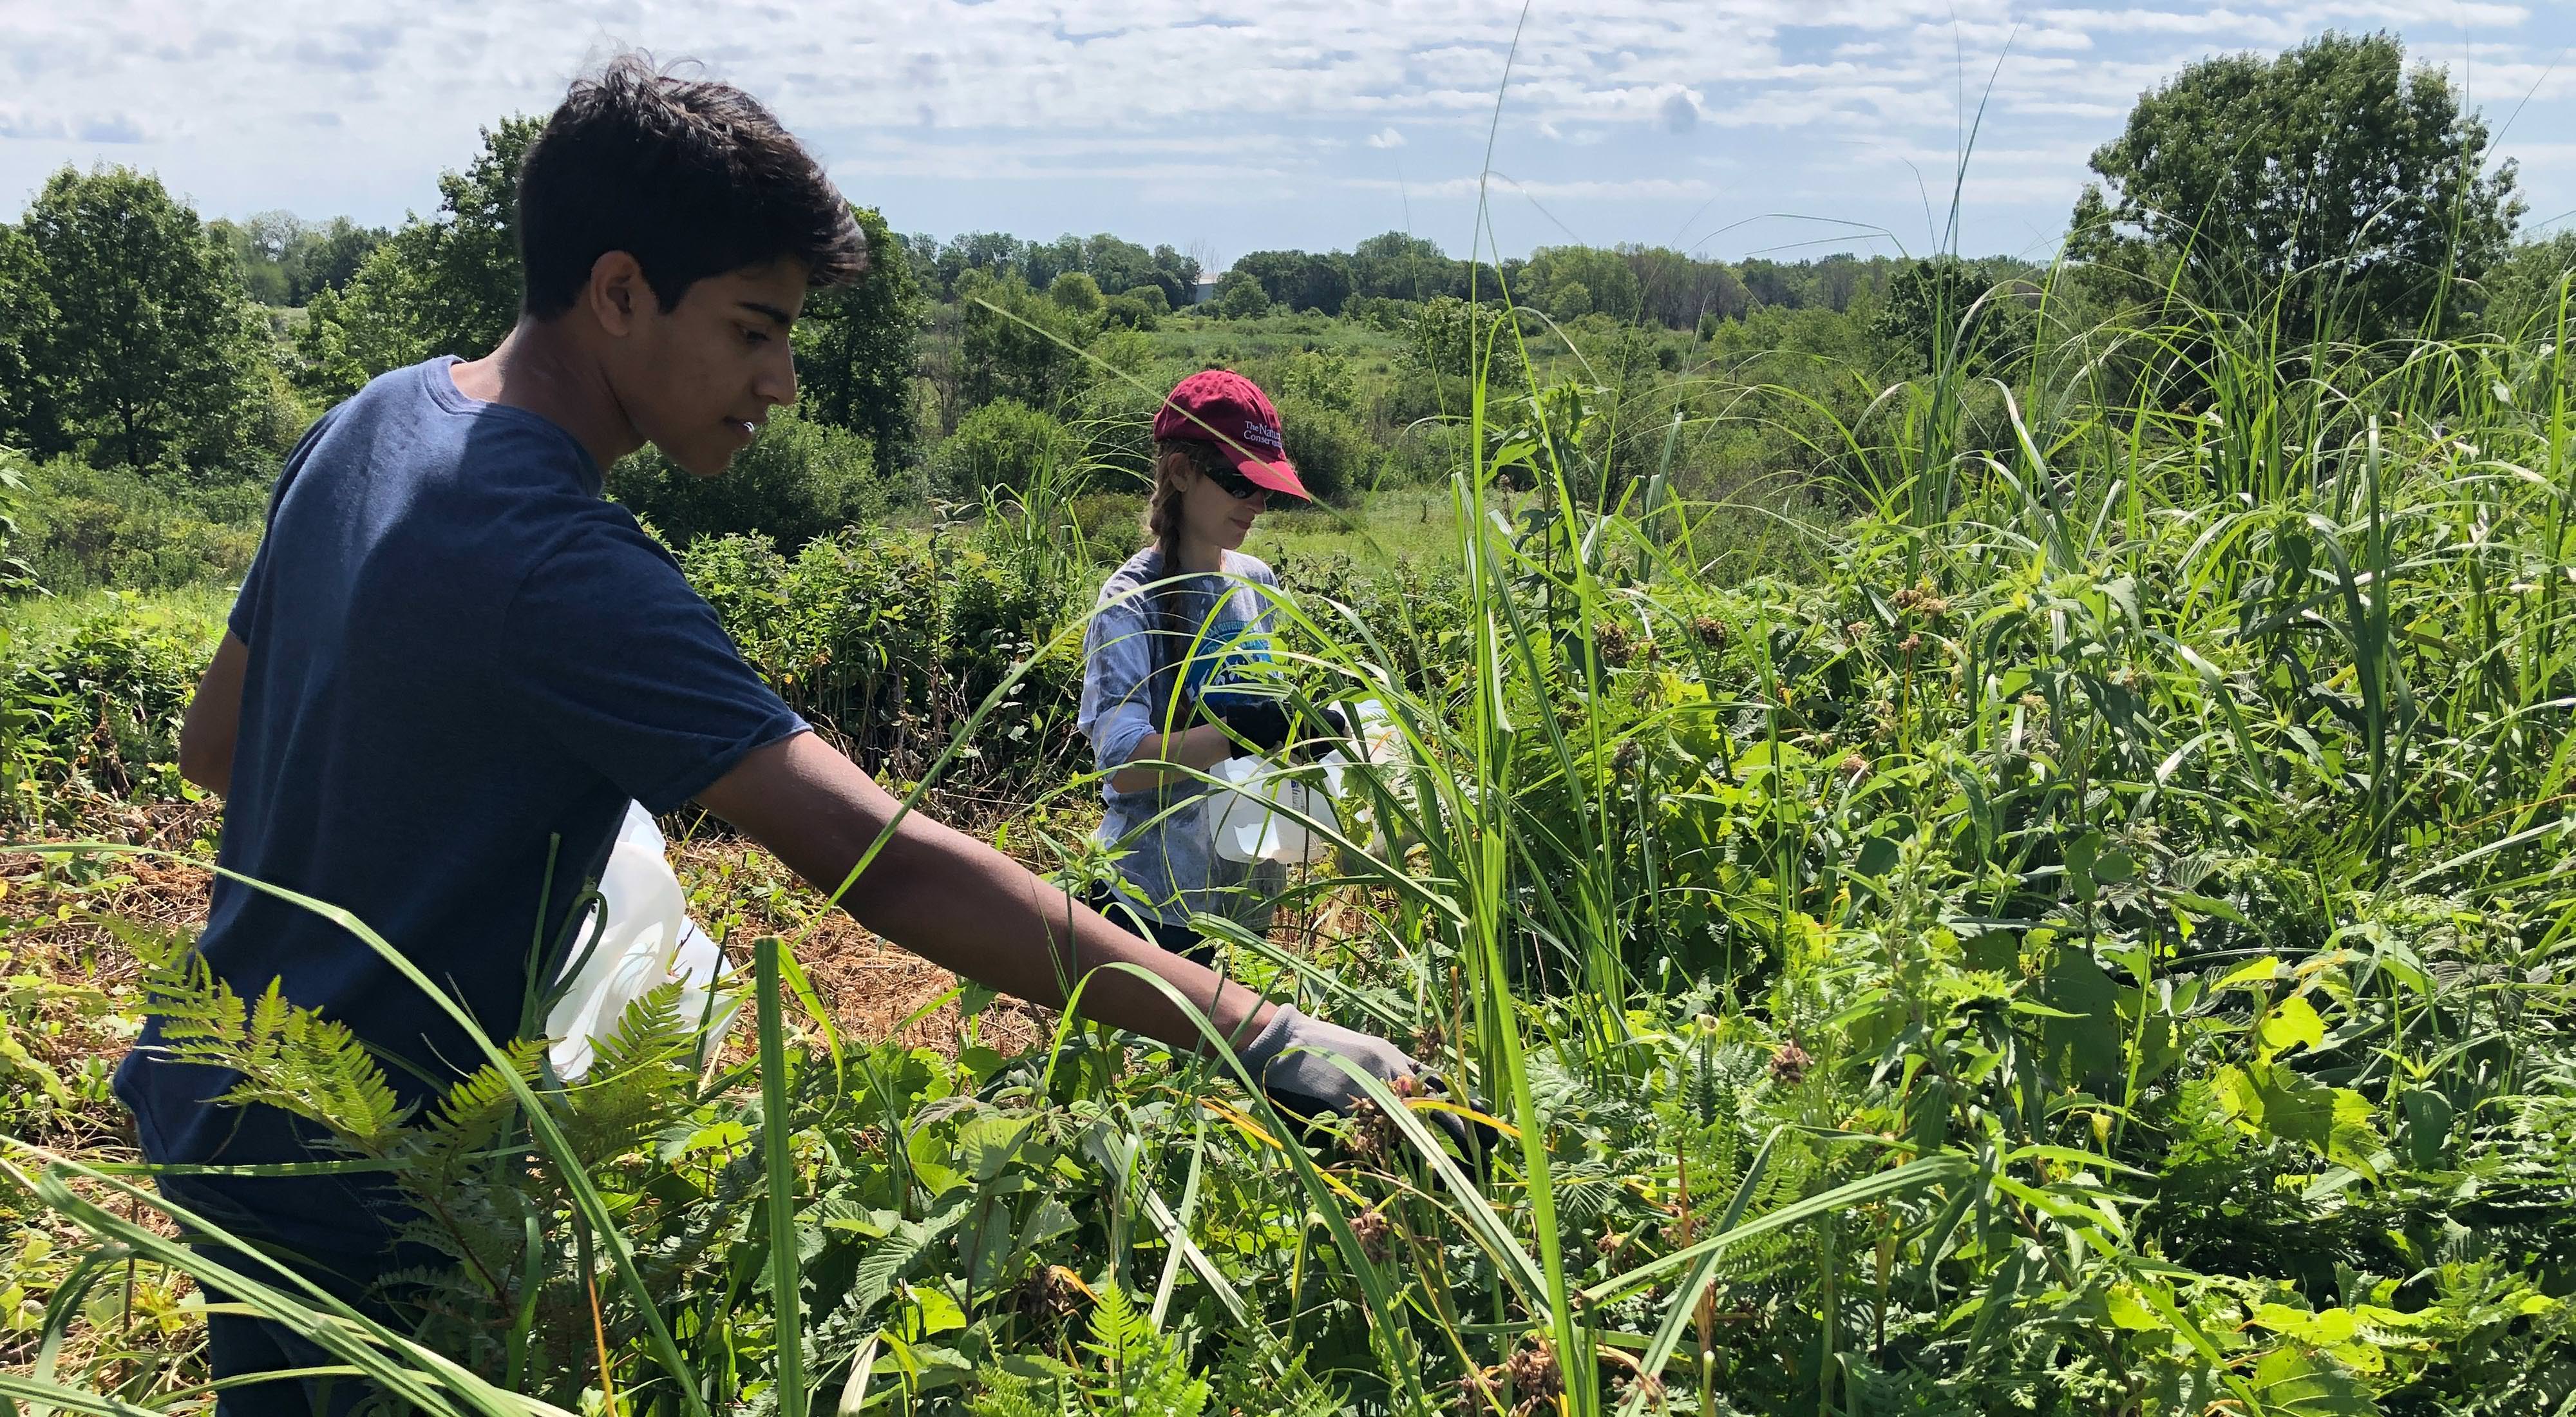 Os alunos do ensino médio Luke e Ernacoletam sementes de flores selvagens que serão usadas para plantio, como parte dos esforços de reflorestamento em Chiwaukee Prairie West.